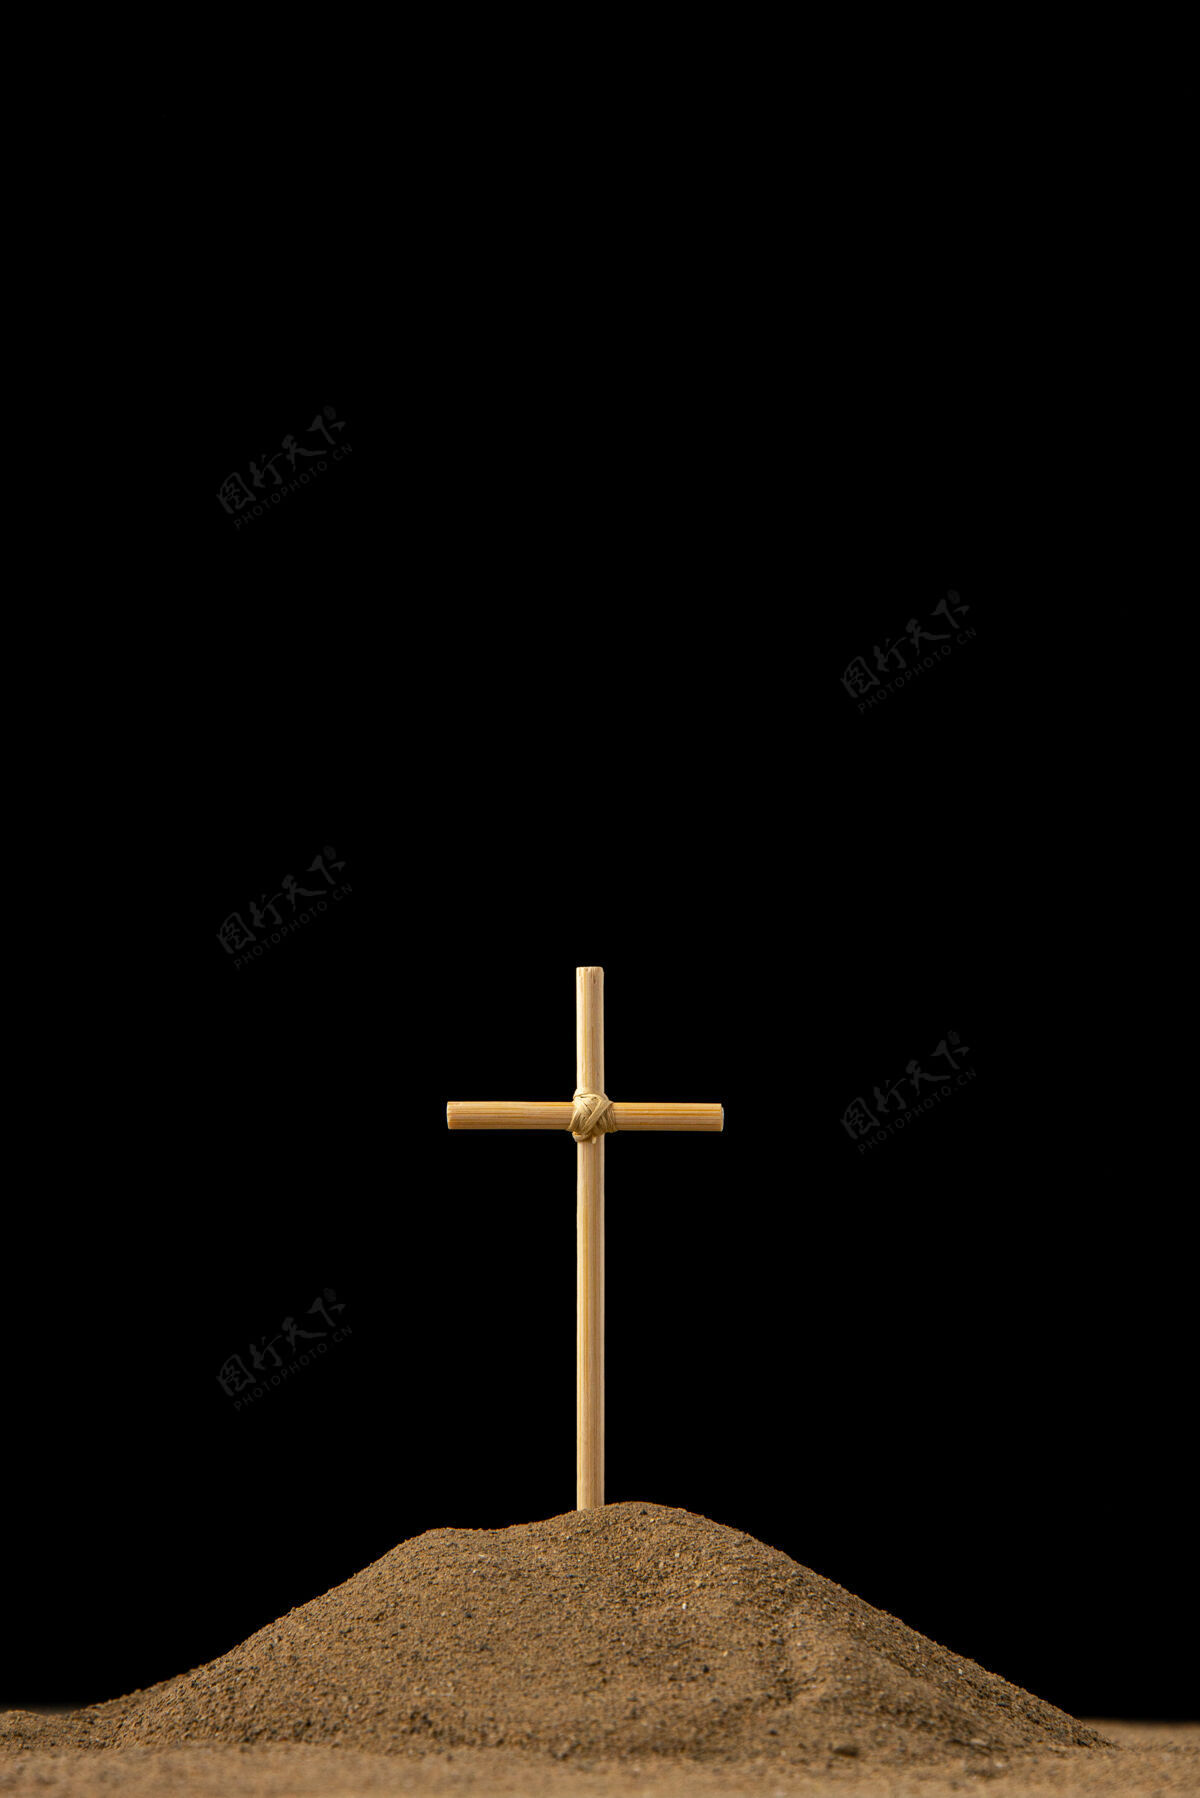 沙子小坟墓的正面图 黑色的十字架黑暗葬礼十字架